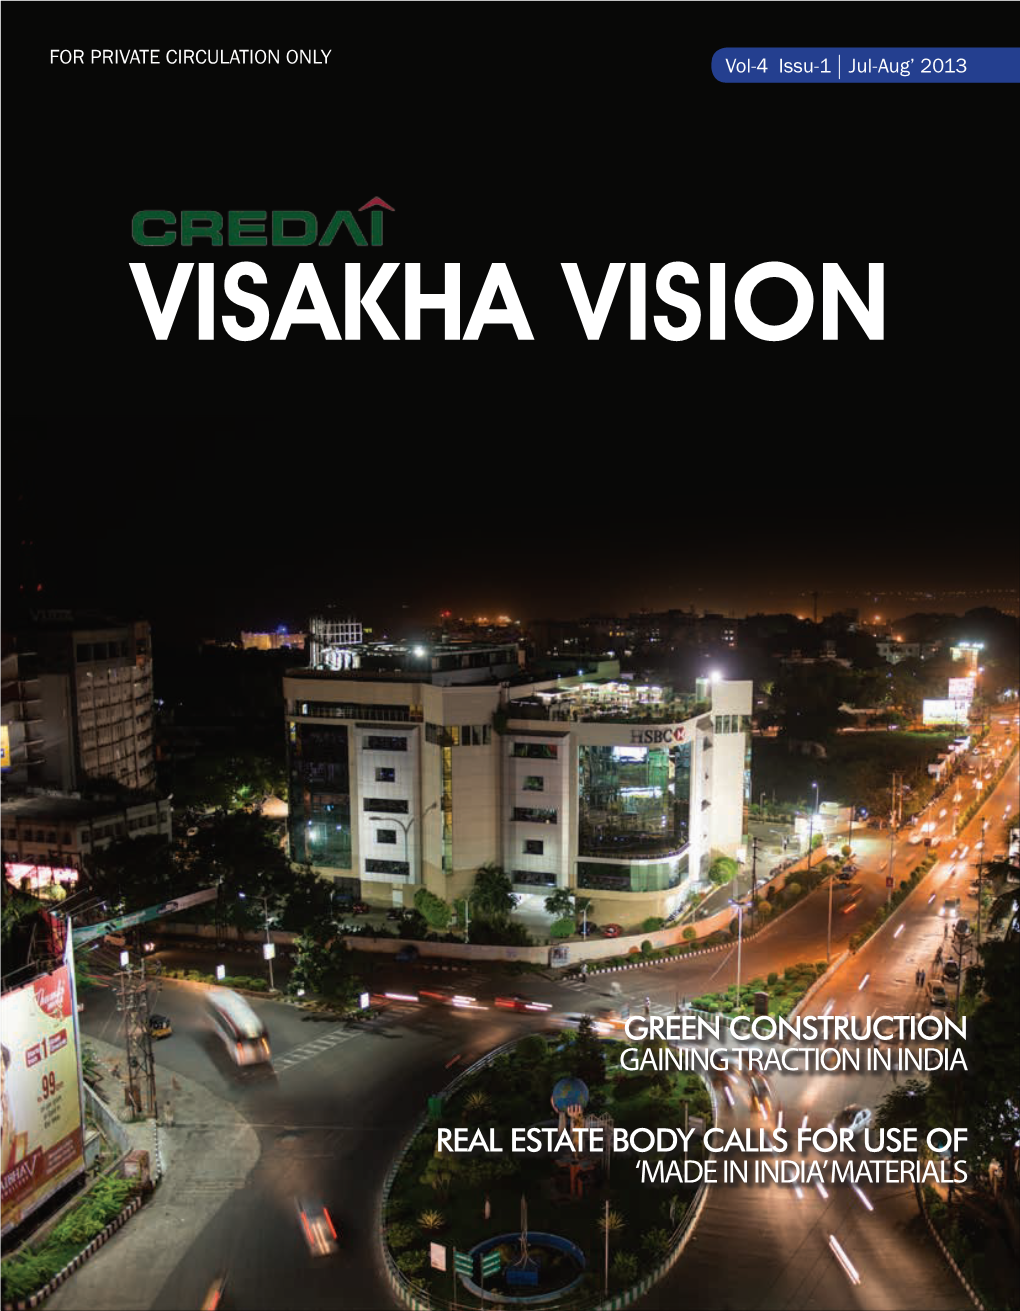 Visakha Vision